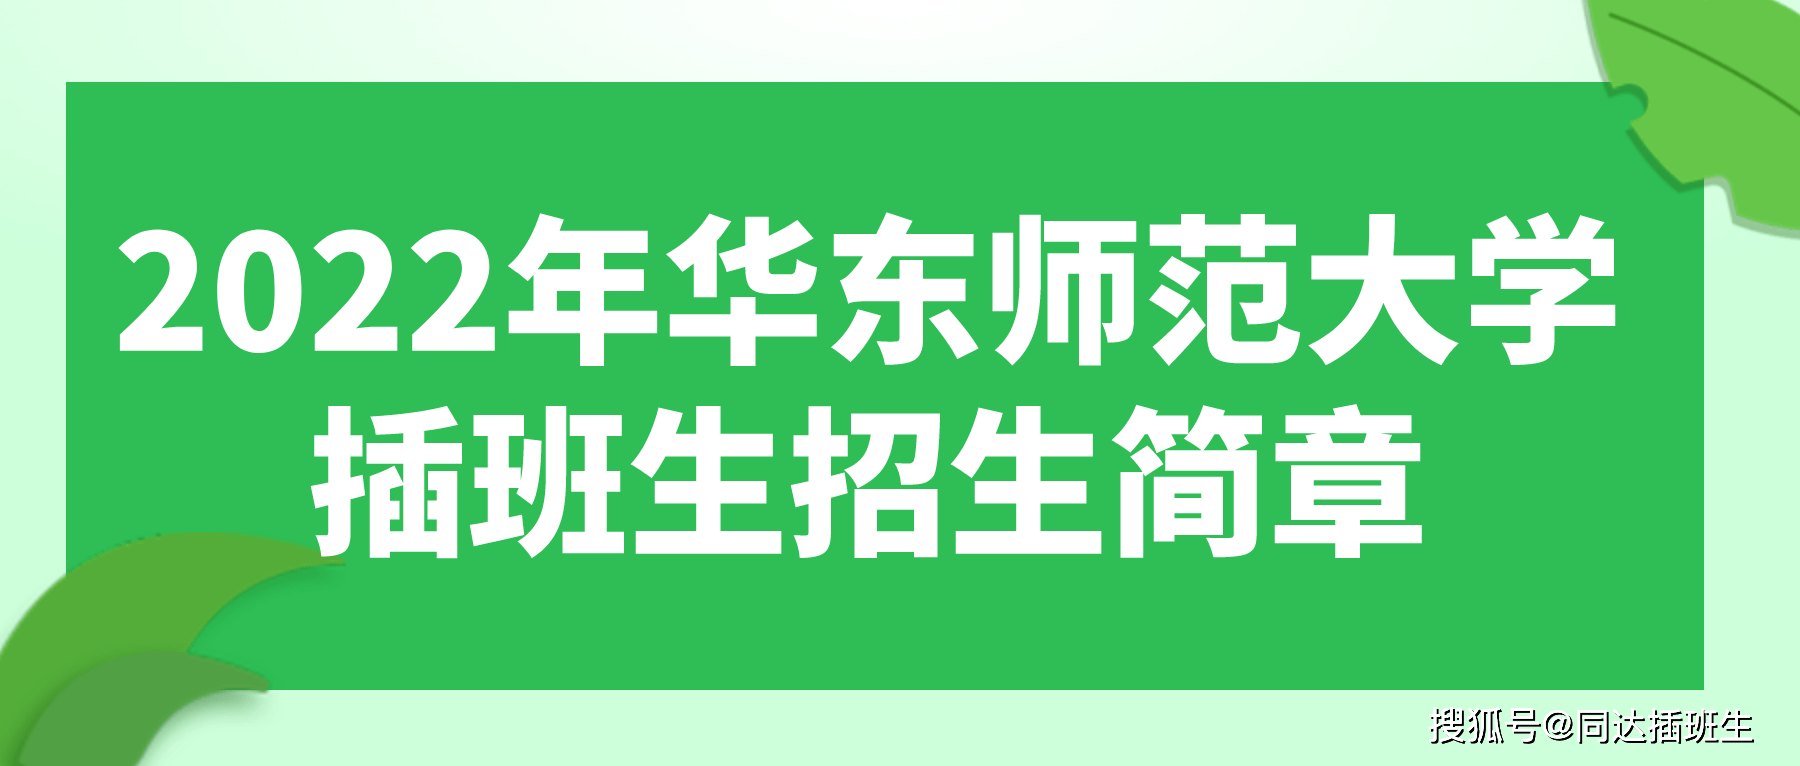 上海插班生-2022年华东师范大学插班生招生简章及报名条件汇总